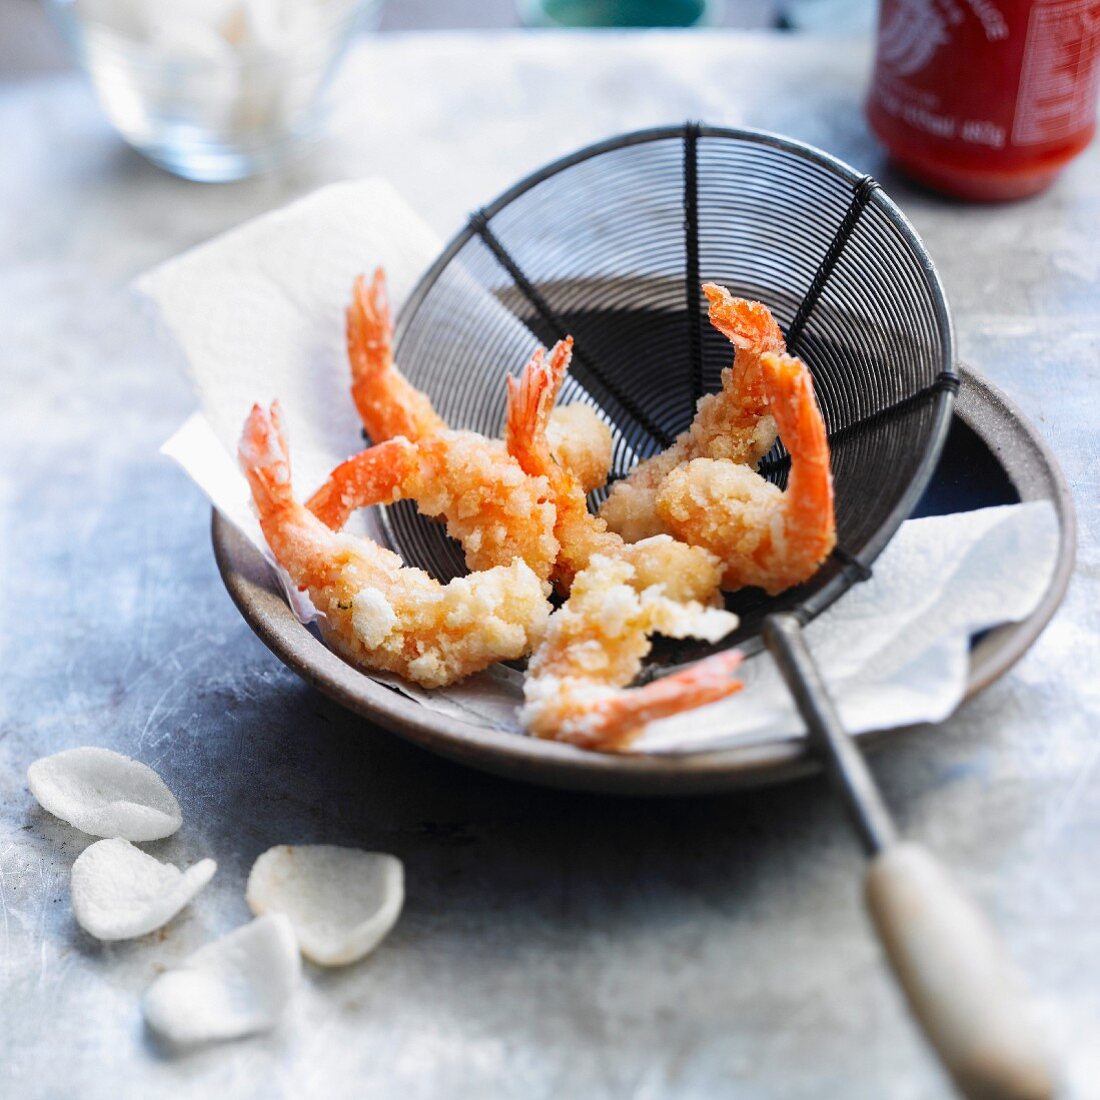 Fried shrimps coated in crushed shrimp crisps